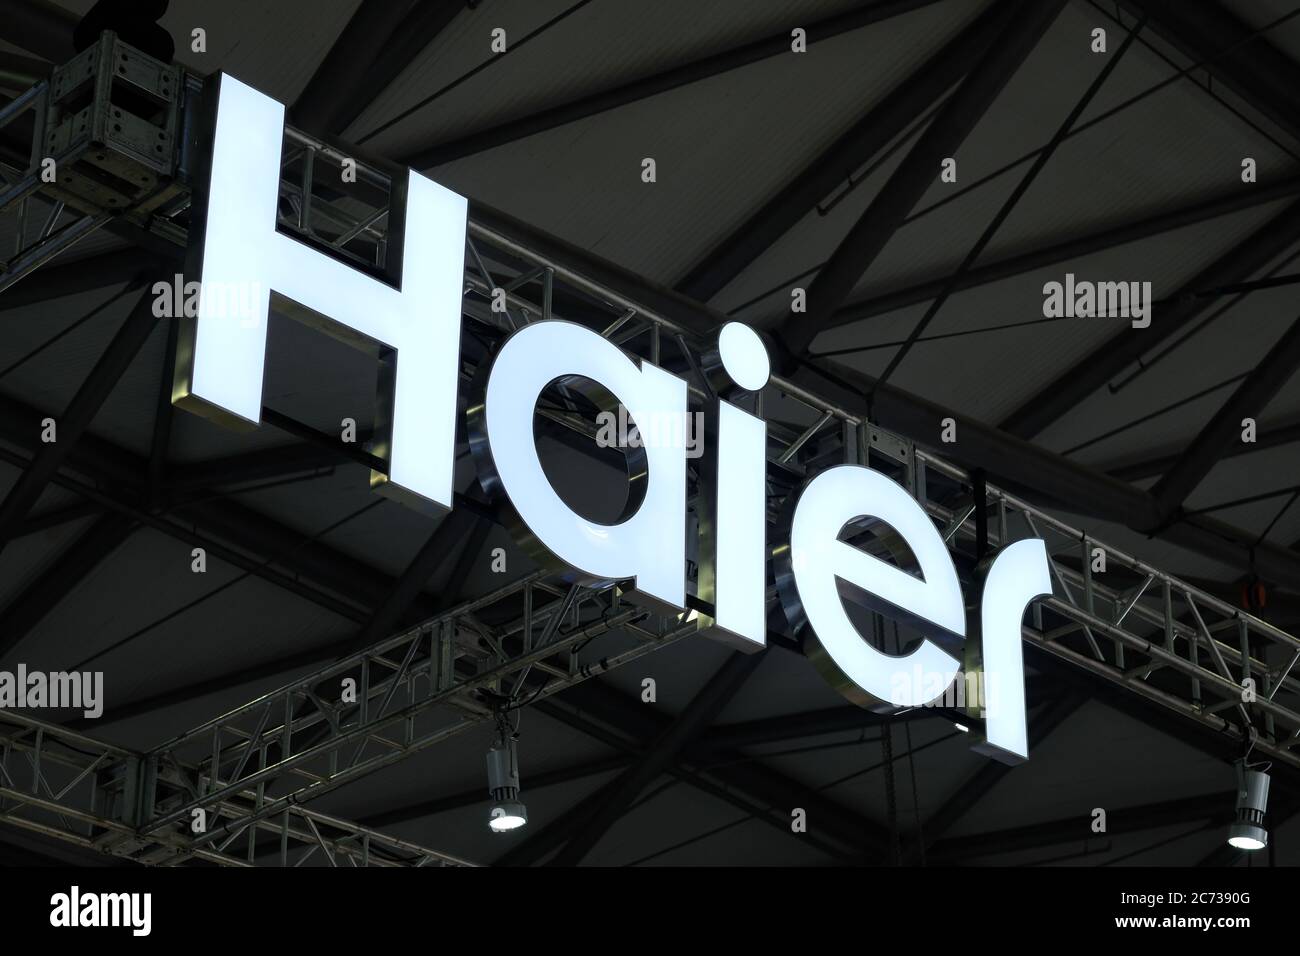 Logo blanc brillant de la marque Haier Corporation sur fond sombre. Entreprise multinationale chinoise d'électronique grand public et d'appareils électroménagers. Filmez au ces Banque D'Images